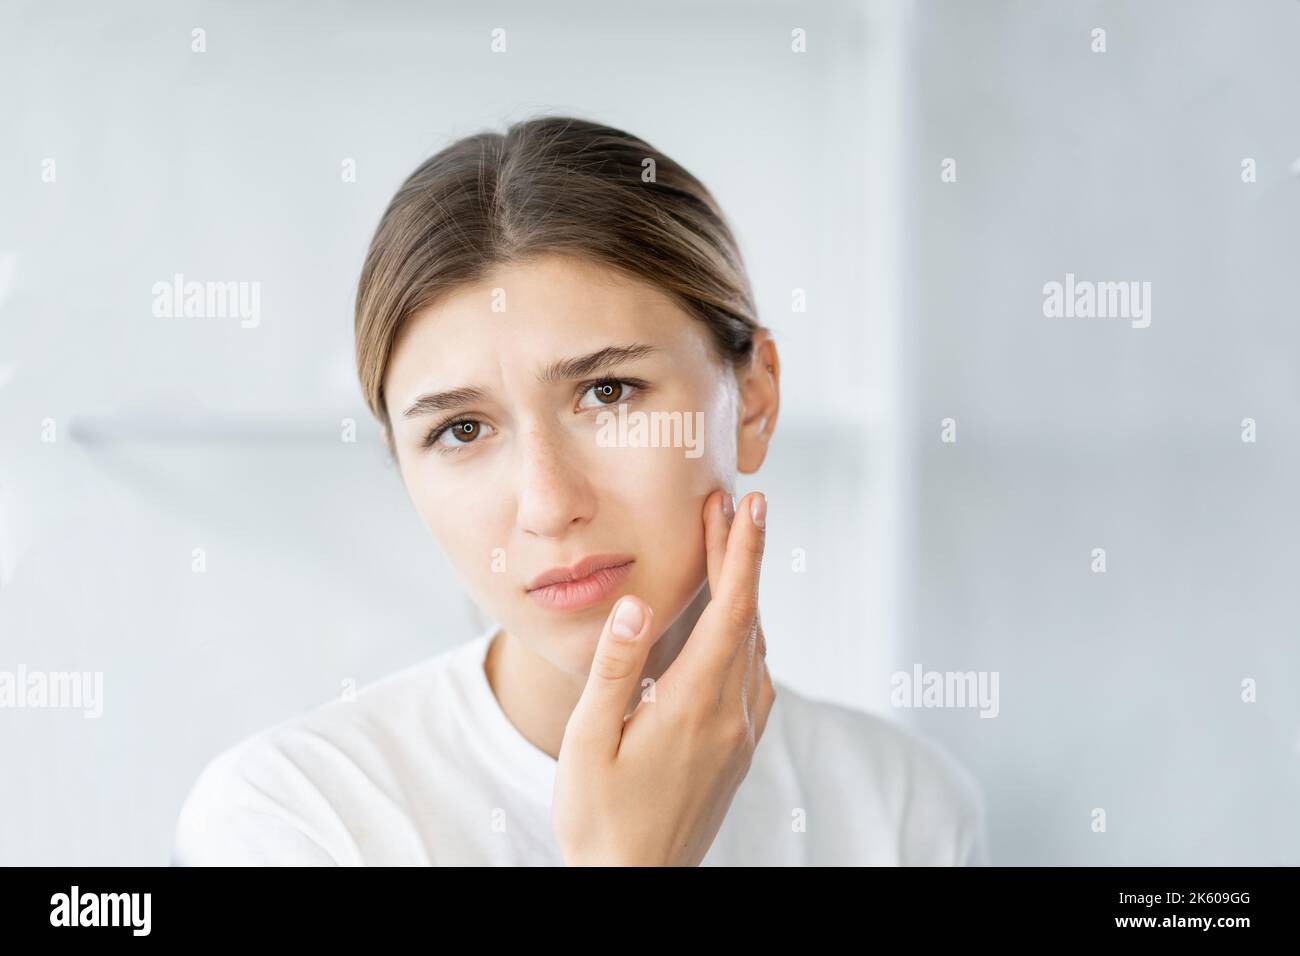 problème d'acné visage inflammation femme touchant la peau Banque D'Images